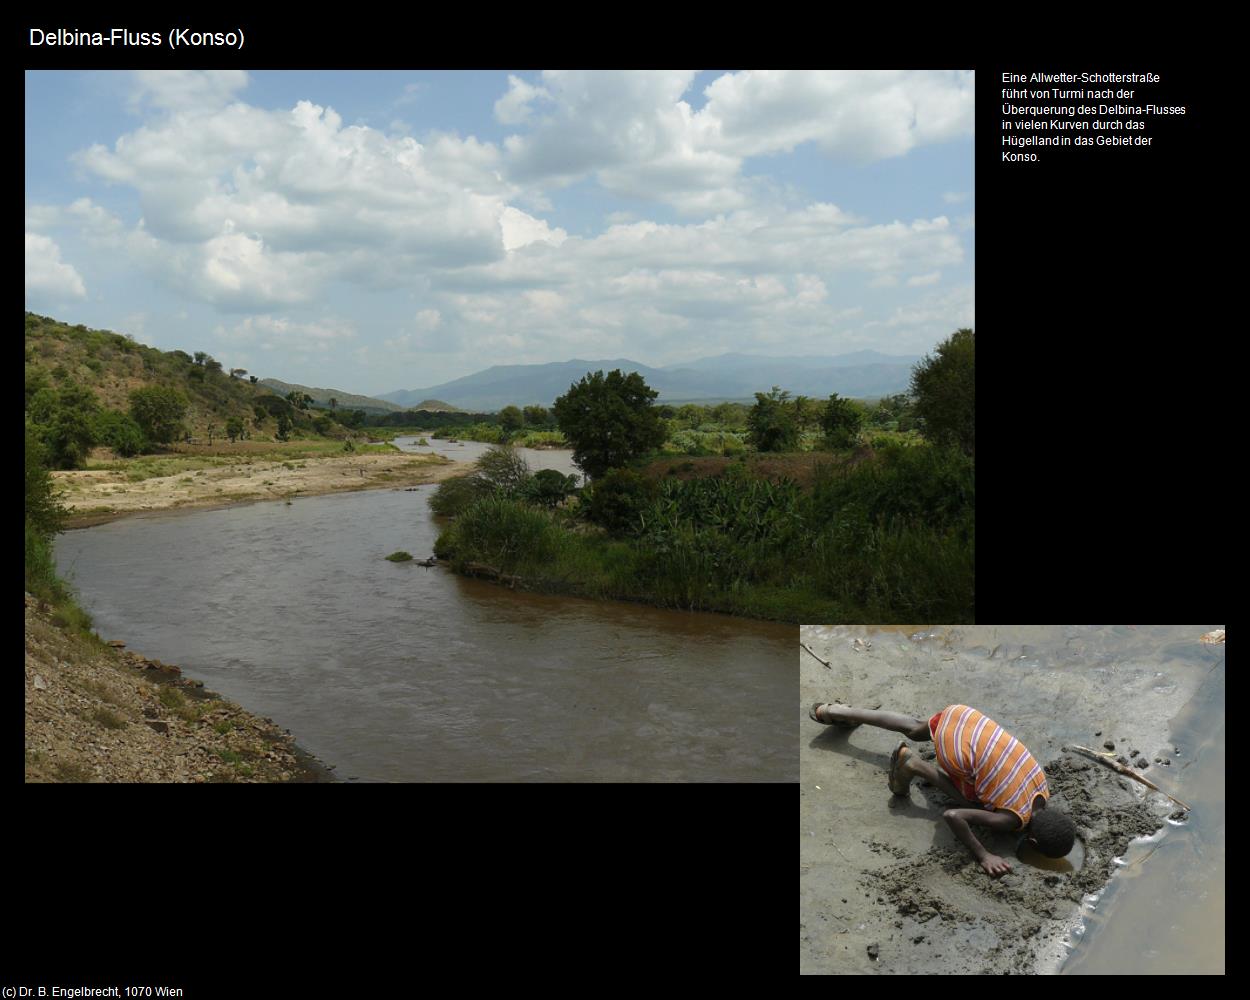 Delbina-Fluss  (Konso) in Äthiopien